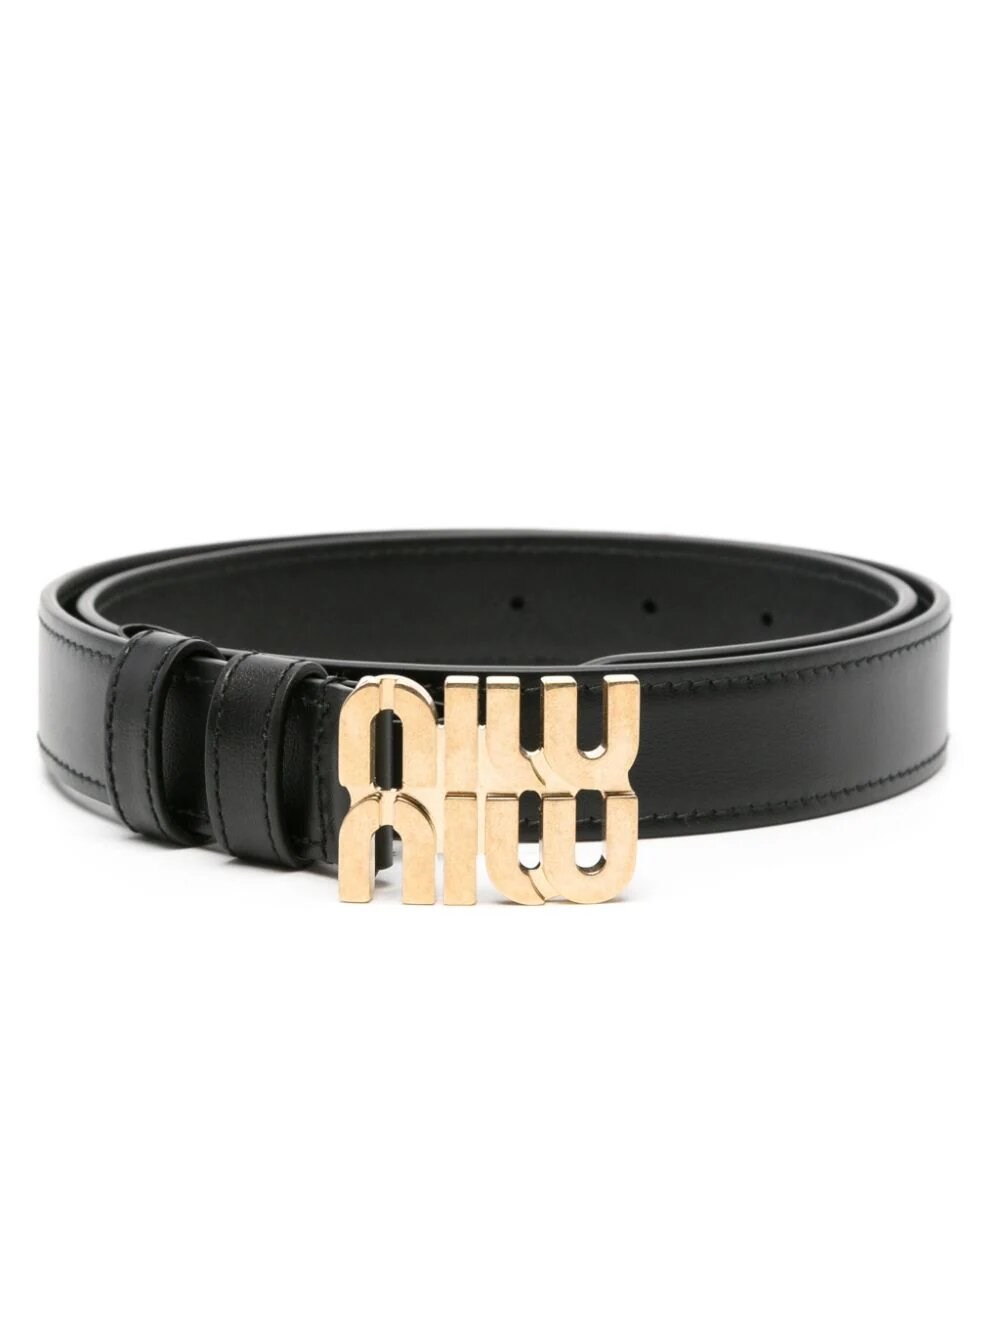 Miu Miu Leather Belt In Black  